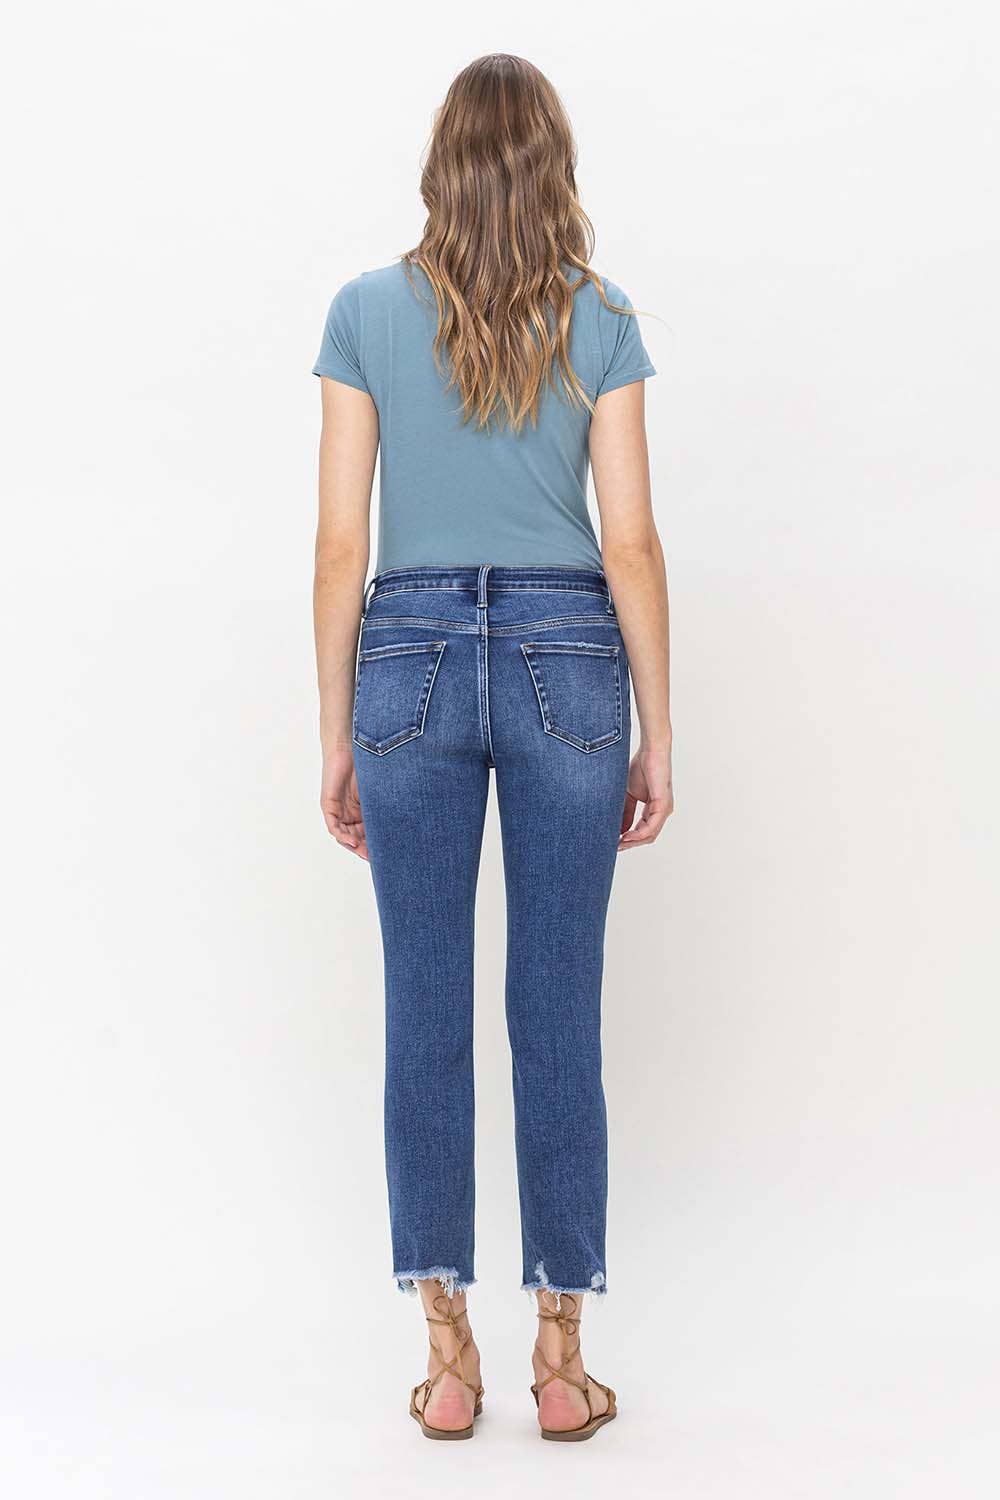 Leona Glitz Super High Rise Straight Jeans - Vervet